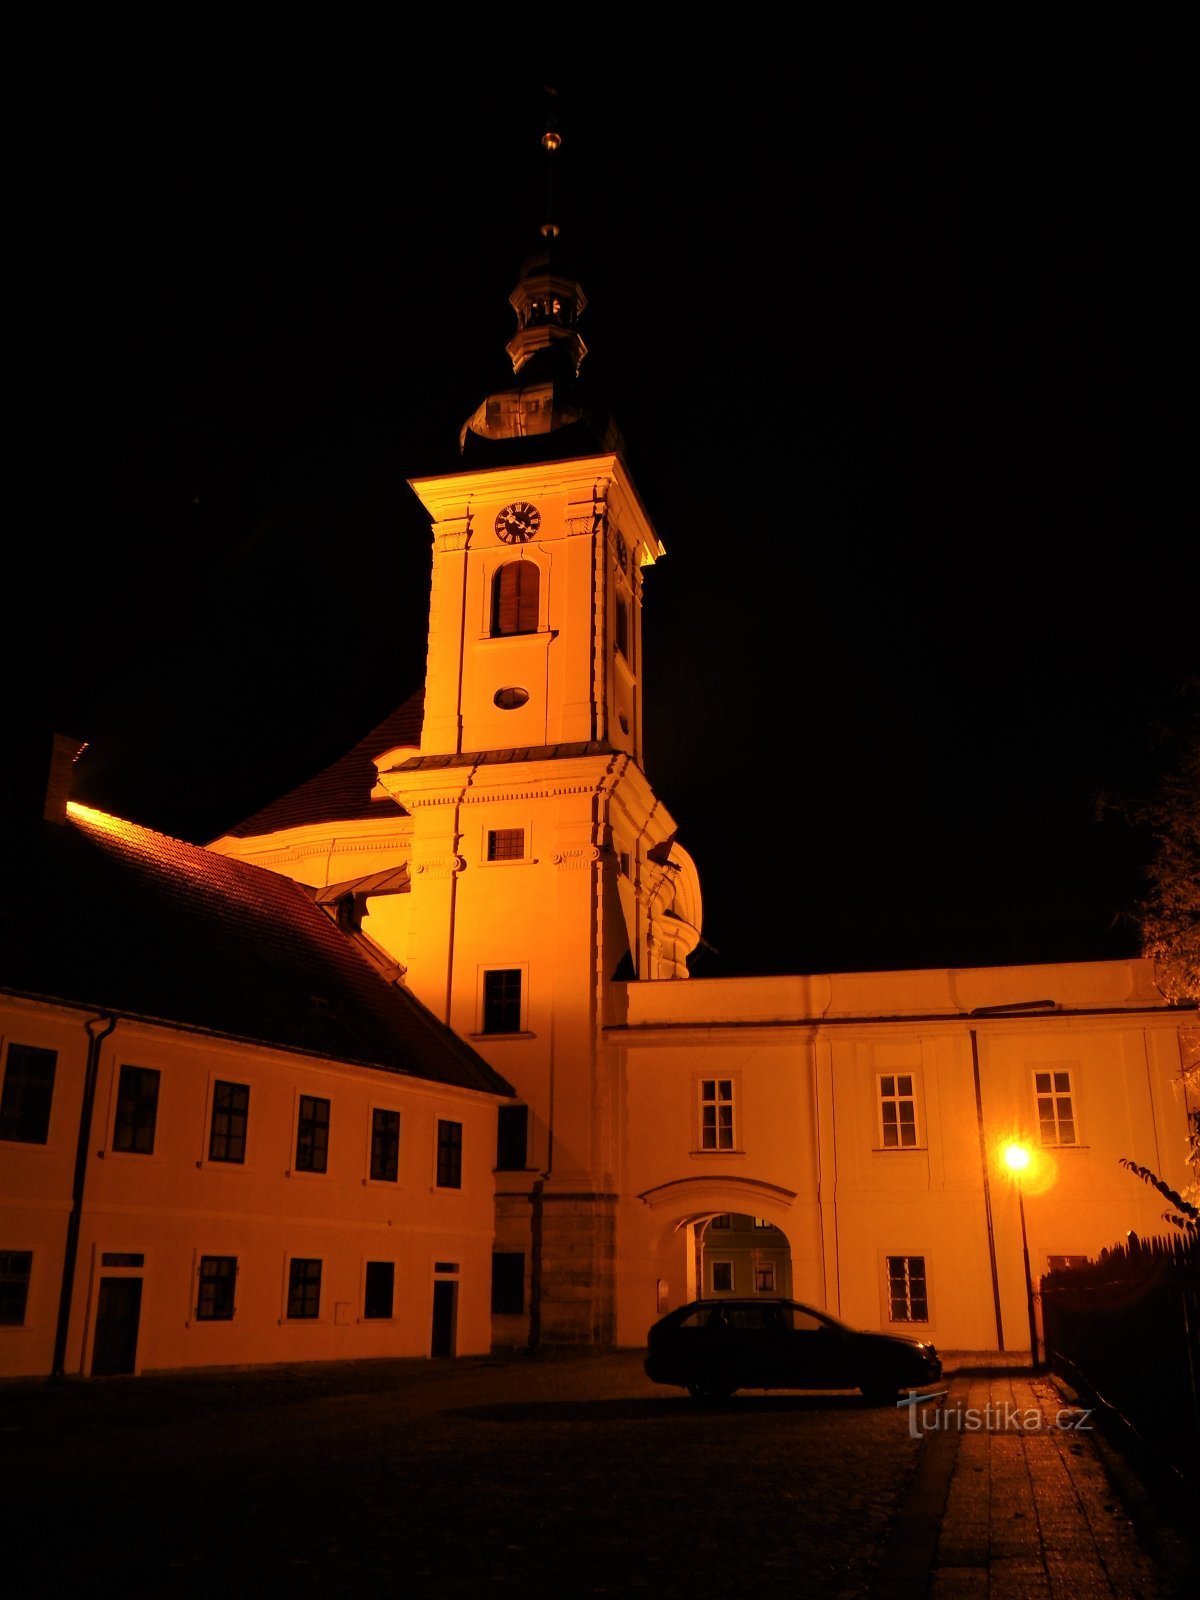 Castle Church of the Epiphany (Smiřice, ngày 17.10.2020 tháng XNUMX năm XNUMX)